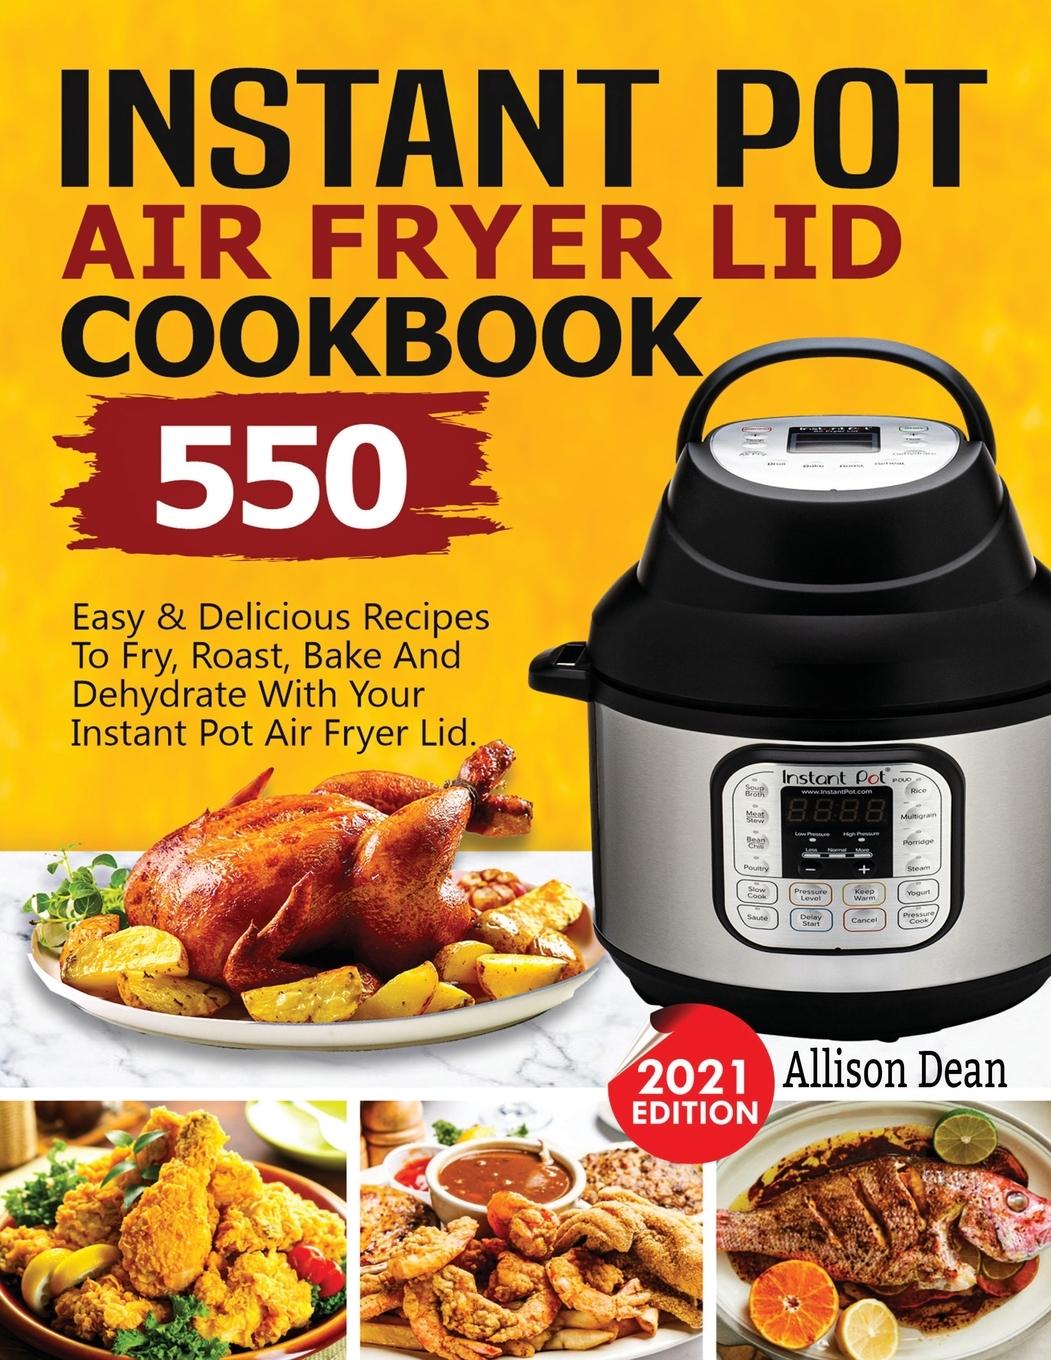 Kniha Instant Pot Air Fryer Lid Cookbook 